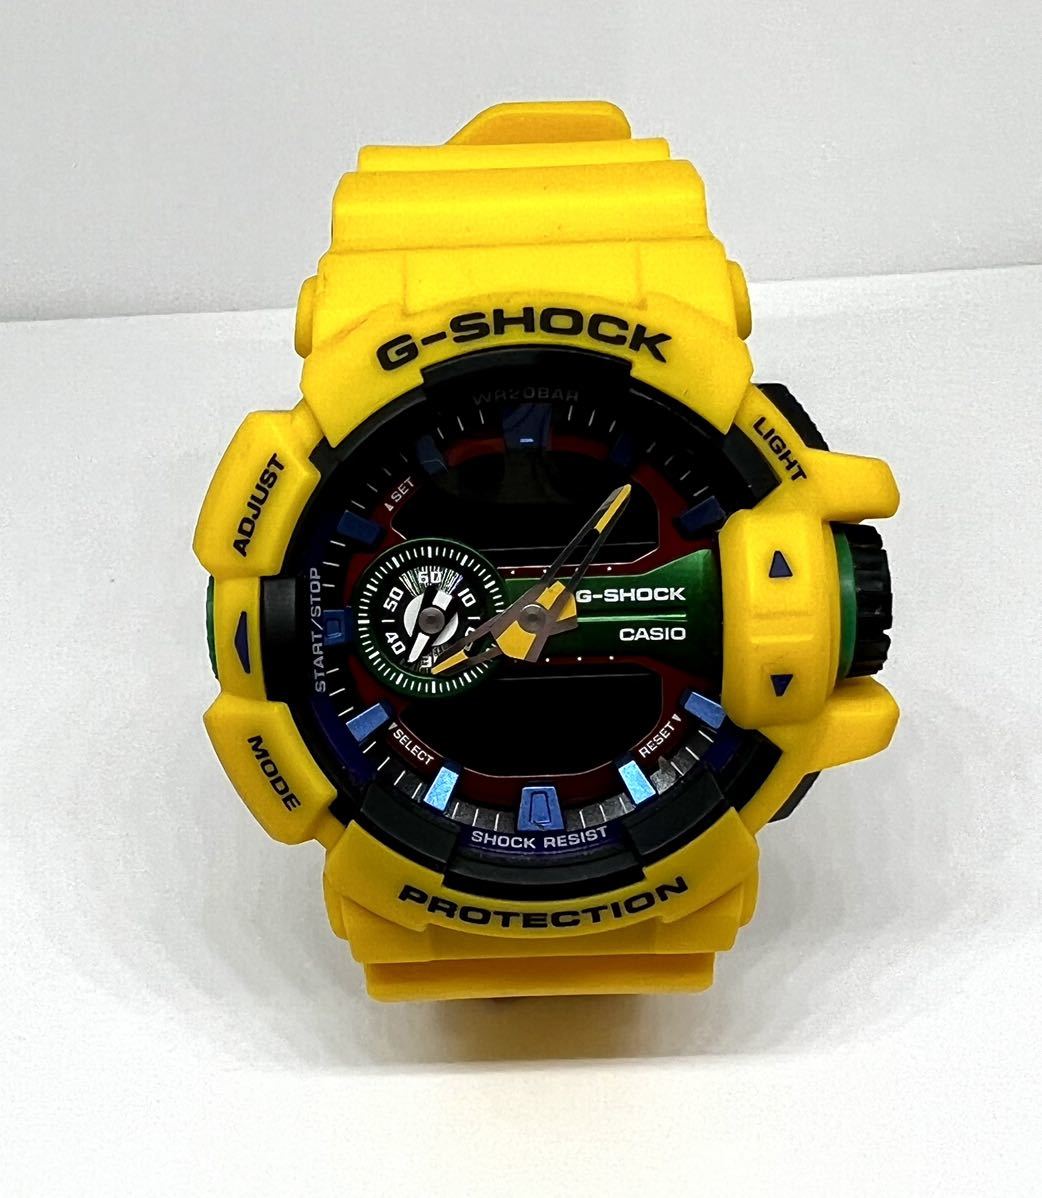 CASIO G-SHOCK 腕時計 GA-400 ハイパーカラーズ デジタル ソーラー